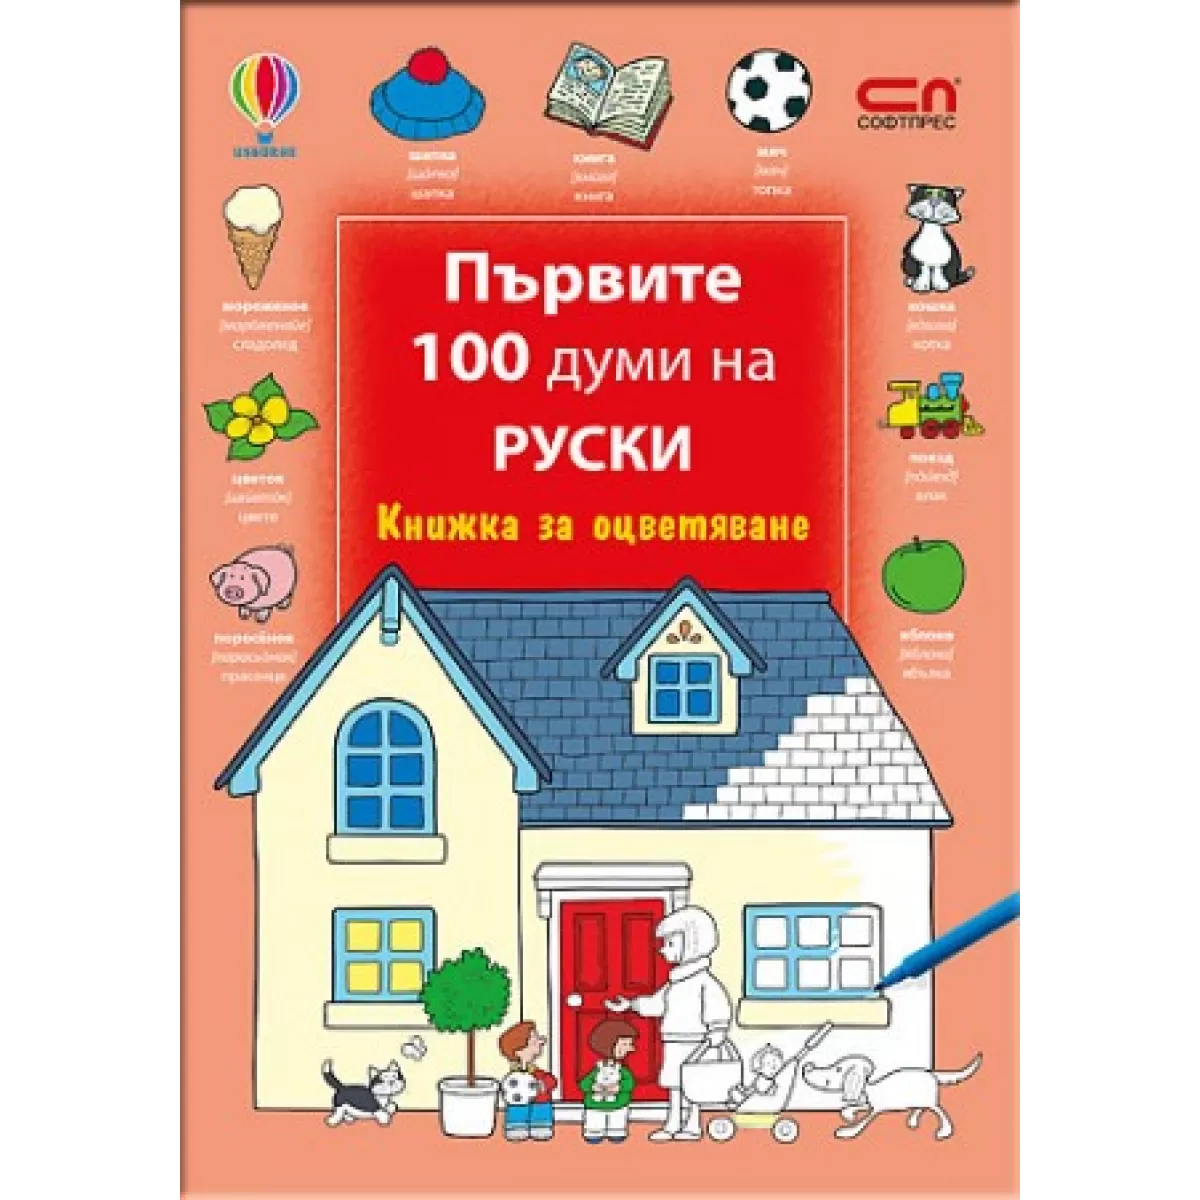 Първите 100 думи на руски – Книжка за оцветяване